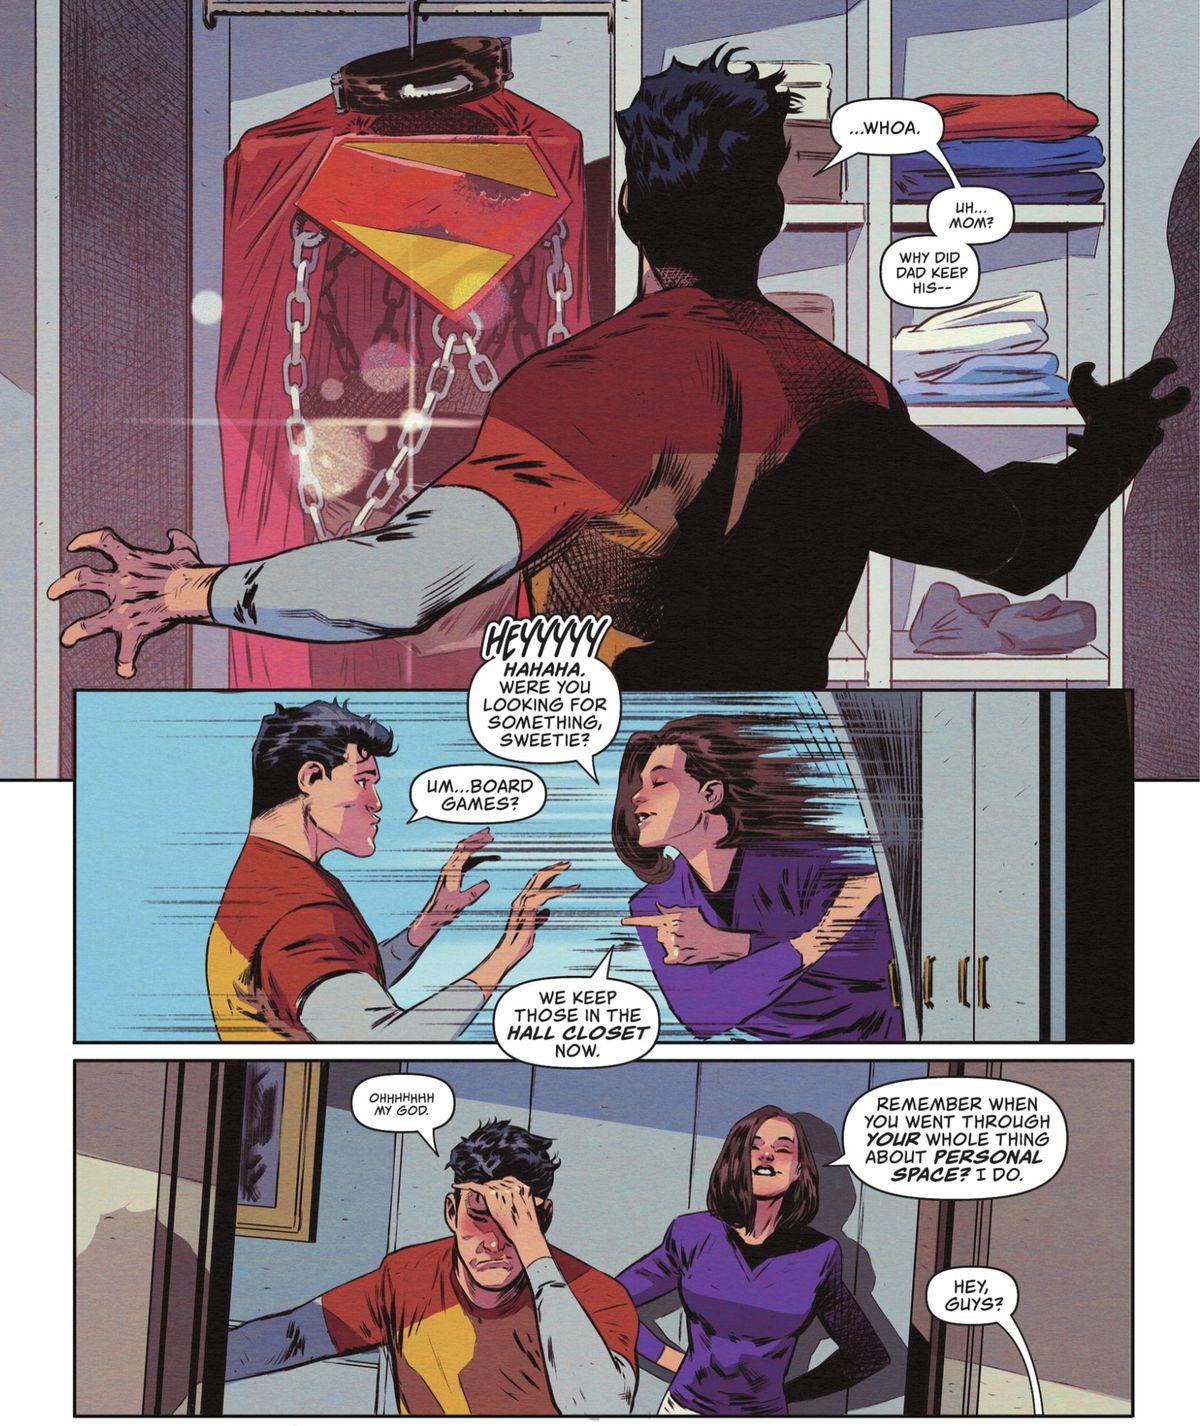 Jon Kent otwiera szafę rodziców w poszukiwaniu gier planszowych i znajduje niezwykle skąpy kostium swojego ojca ze świata wojny z łańcuchami i kołnierzem. Lois Lane zatrzaskuje drzwi, gdy Jon jęczy „Ochhhhhhh mój Boże”. Delikatnie upomina go o przestrzeń osobistą rodzica/dziecka.